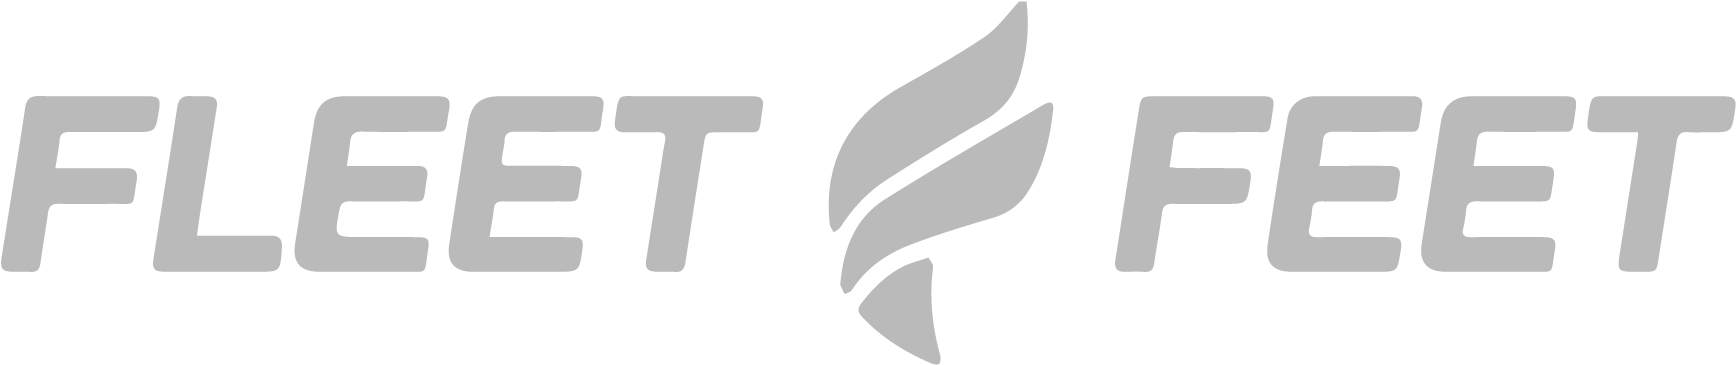 Fleet Feet Logo PNG